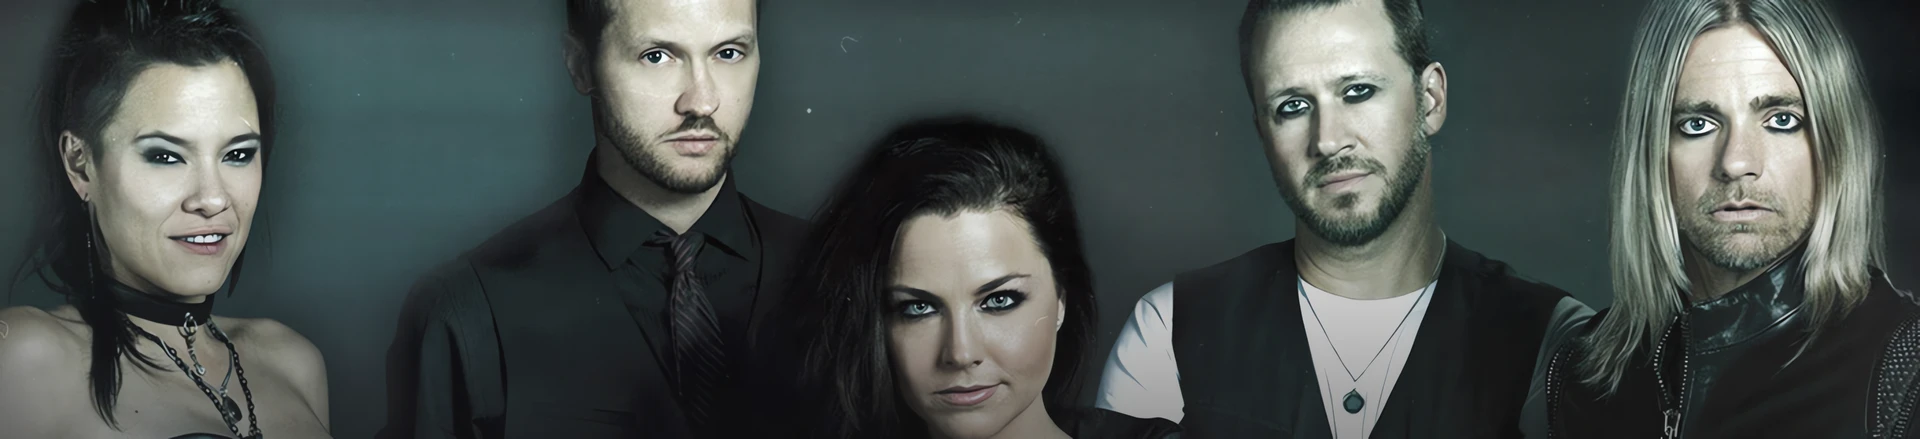 Evanescence w Warszawie (relacja)